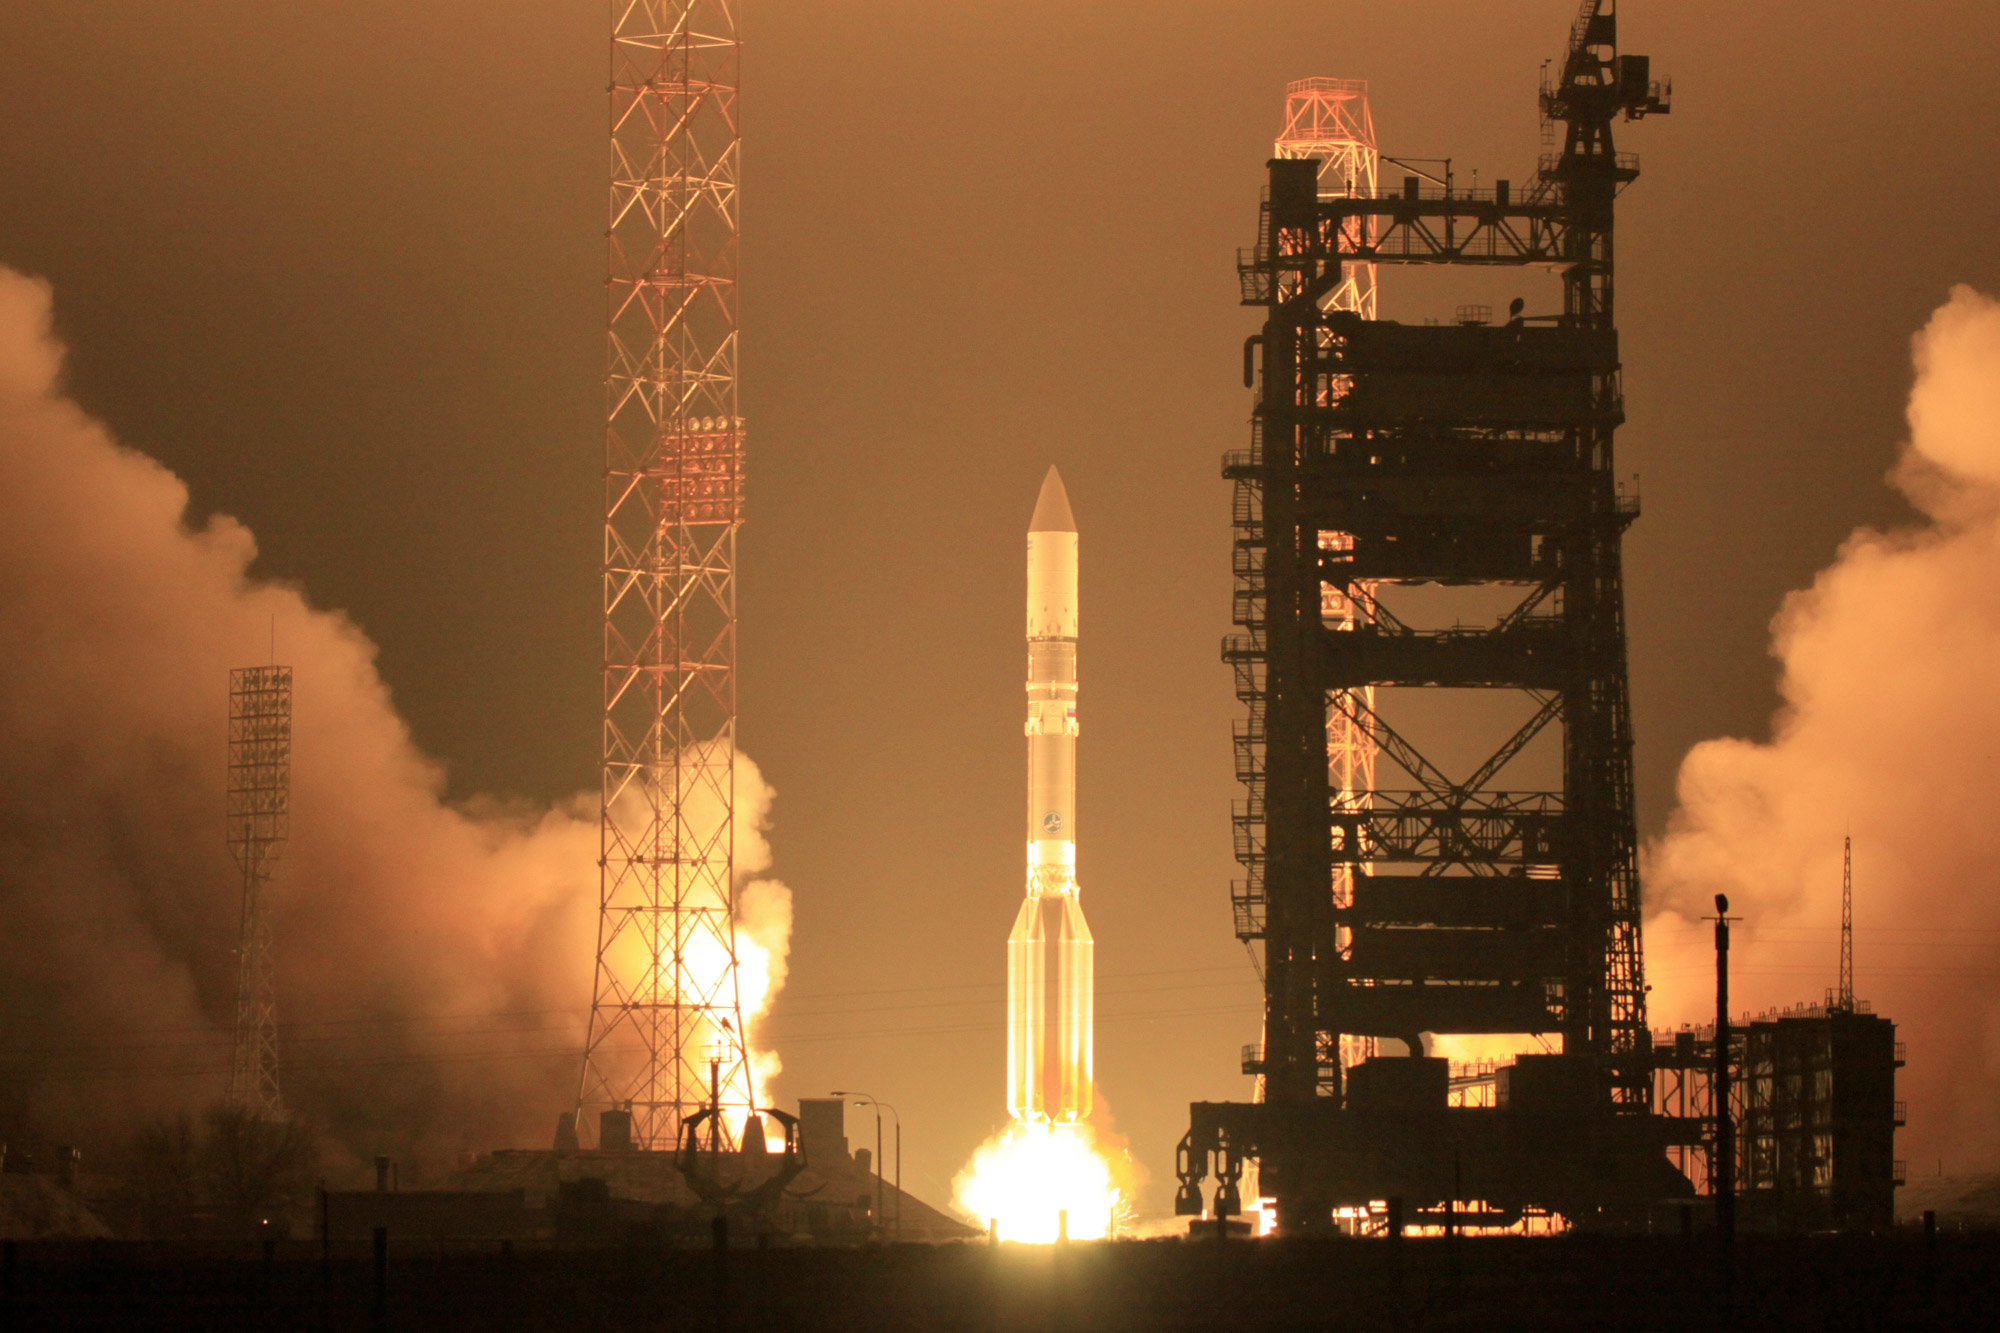 Décollage, samedi 8 décembre à 17 h 13 heure locale, du lanceur Proton du cosmodrome de Baïkonour. Plus tard, les responsables de la mission s'apercevront que le satellite a été placé sur une orbite trop basse. © International Launch Services